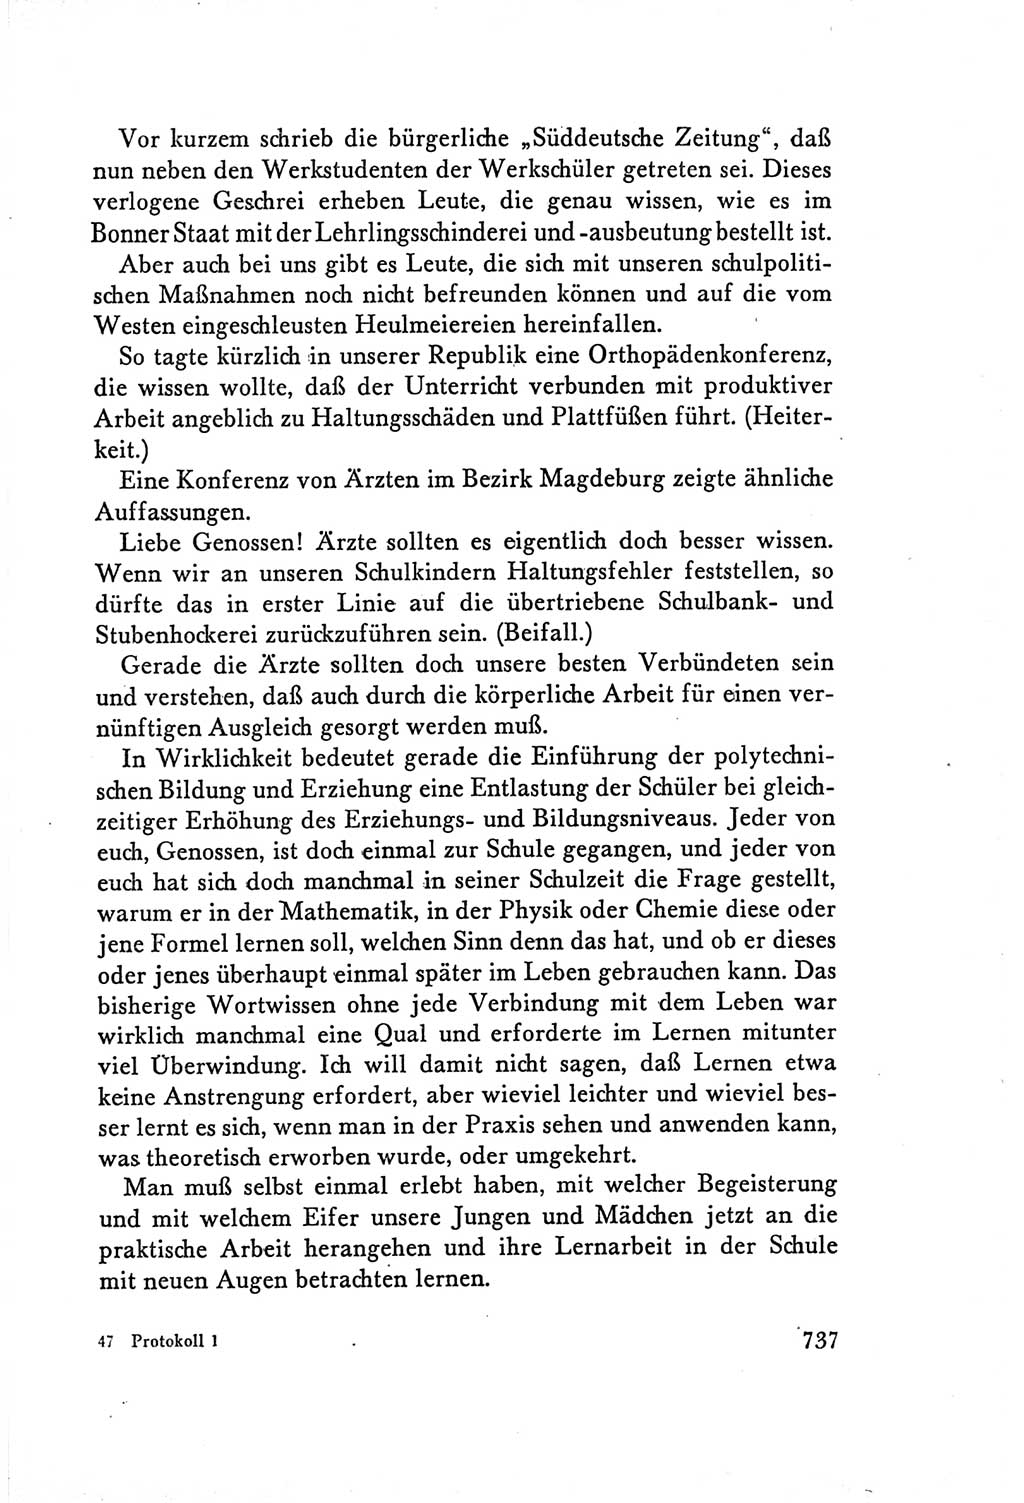 Protokoll der Verhandlungen des Ⅴ. Parteitages der Sozialistischen Einheitspartei Deutschlands (SED) [Deutsche Demokratische Republik (DDR)] 1958, Seite 737